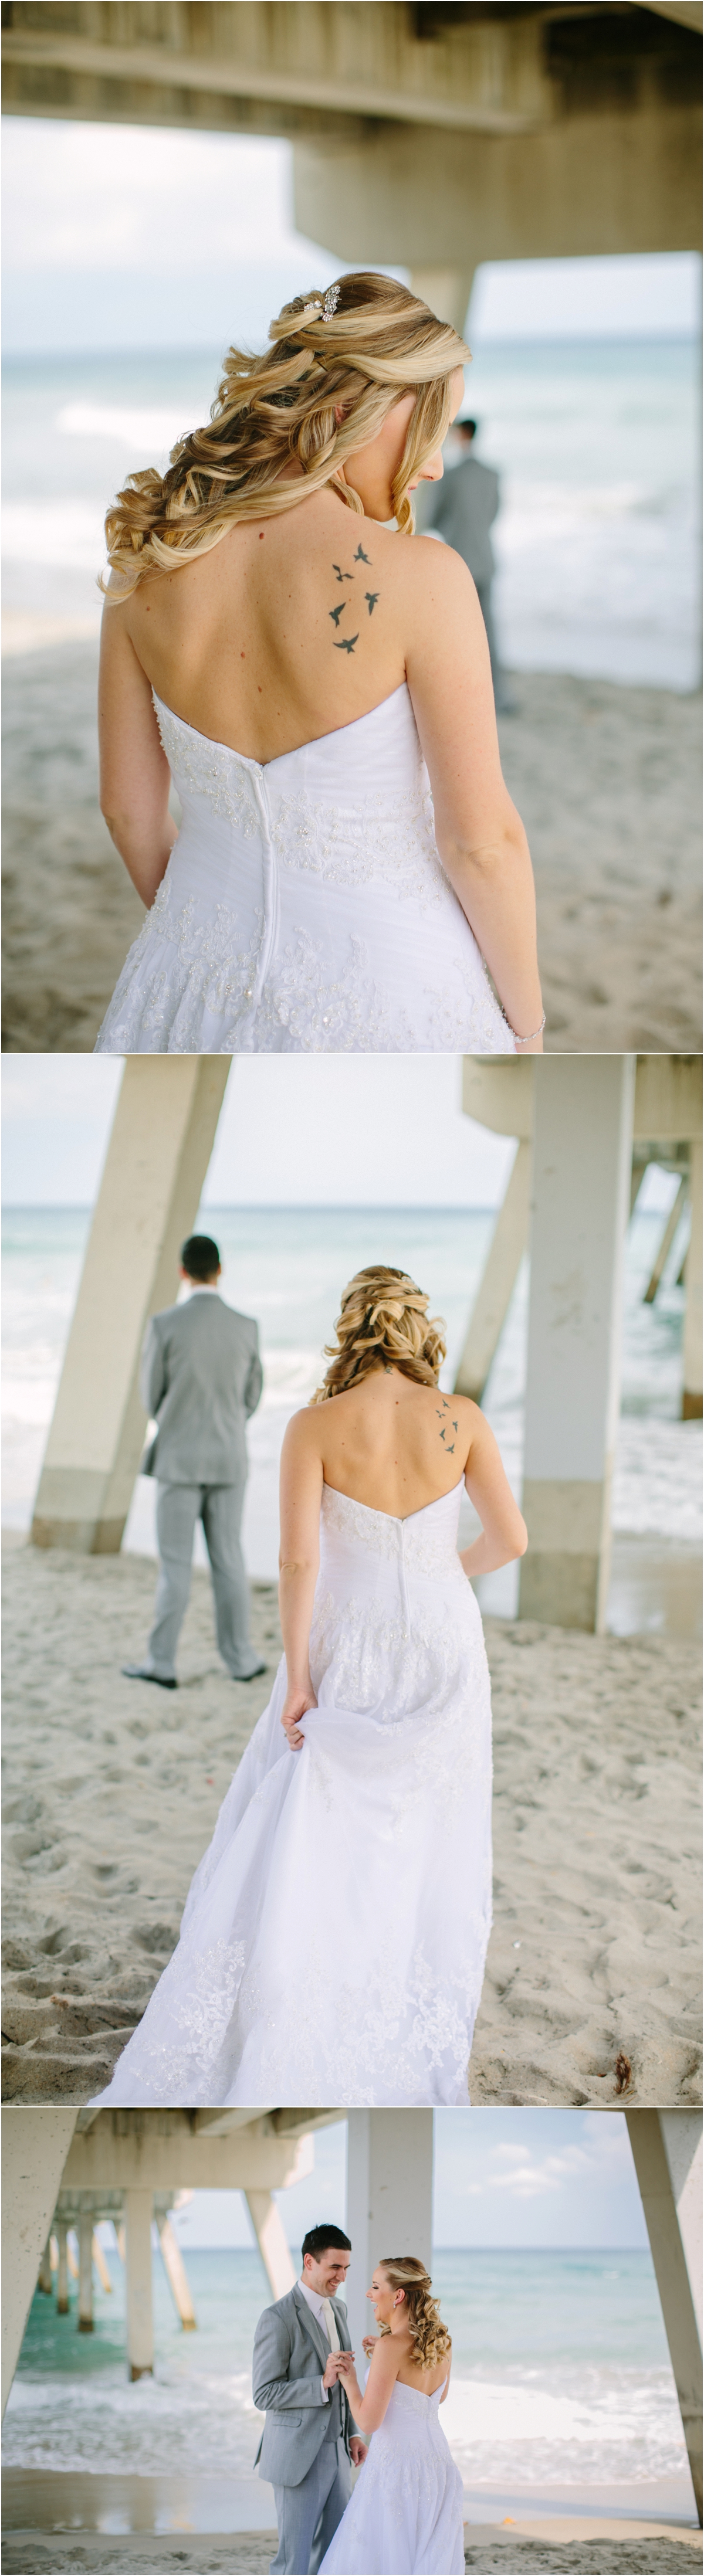 Boca-Raton-South-Florida-Wedding-photography_0006